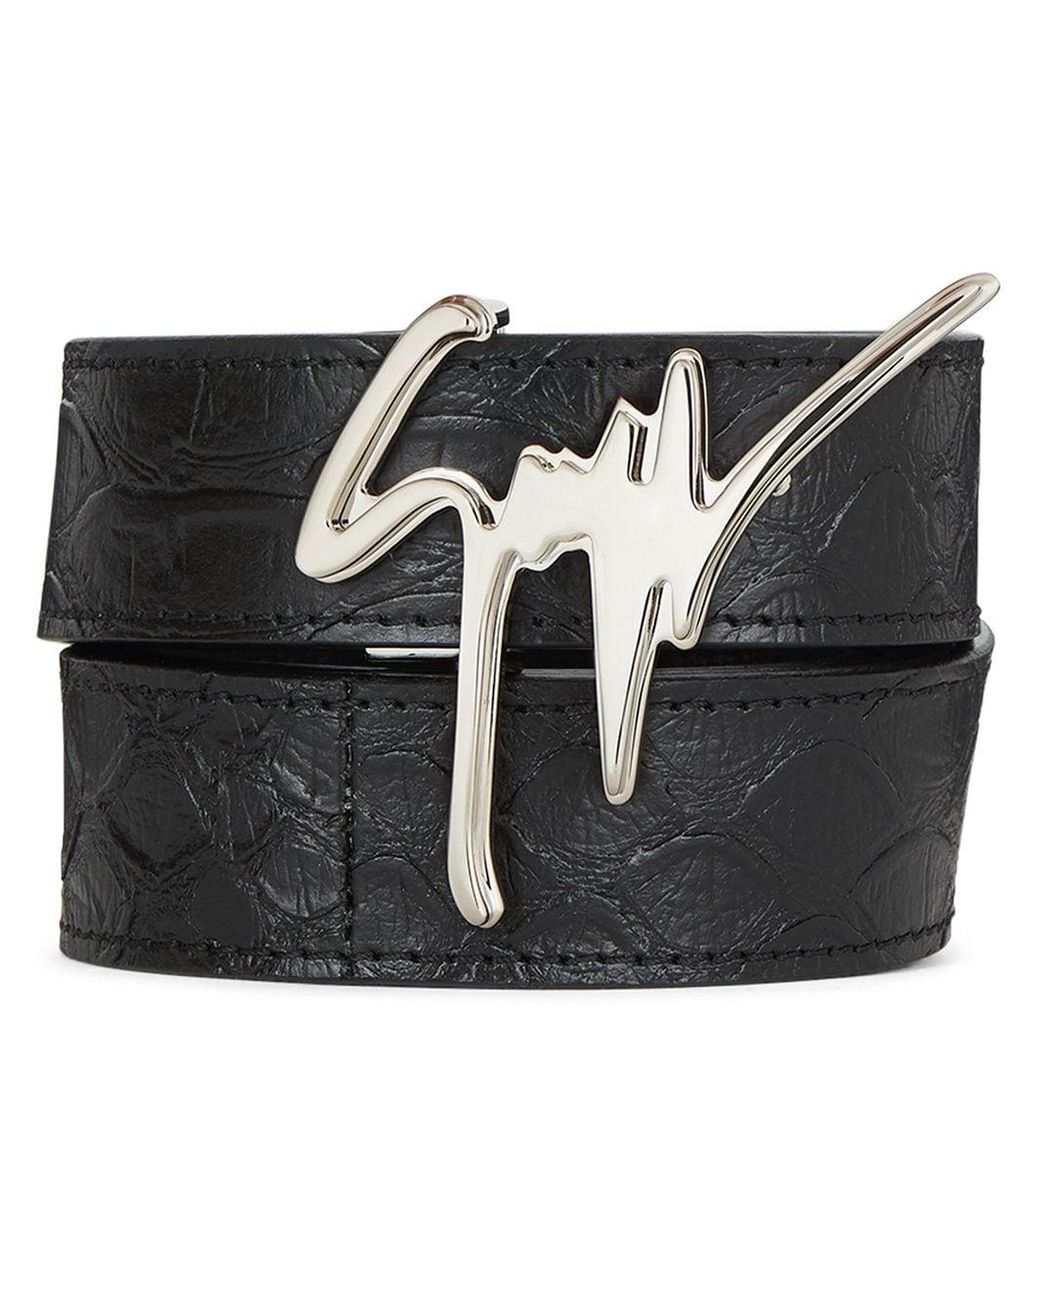 Giuseppe Zanotti Leather Giuseppe Logo Belt in Black for Men - Lyst